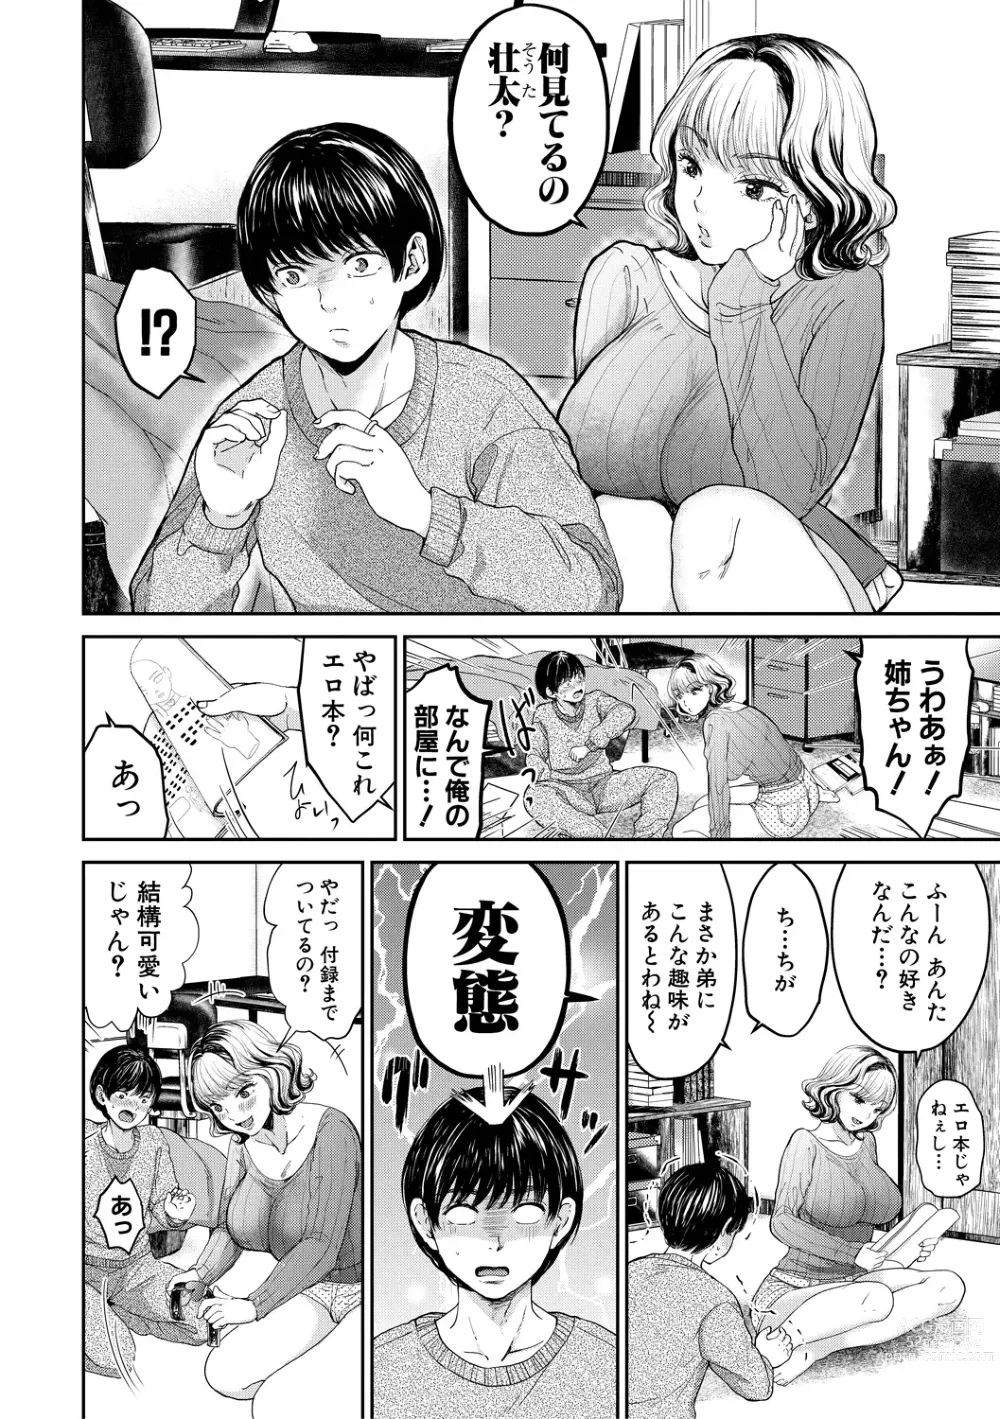 Page 6 of manga Shiborikiri Ane Body